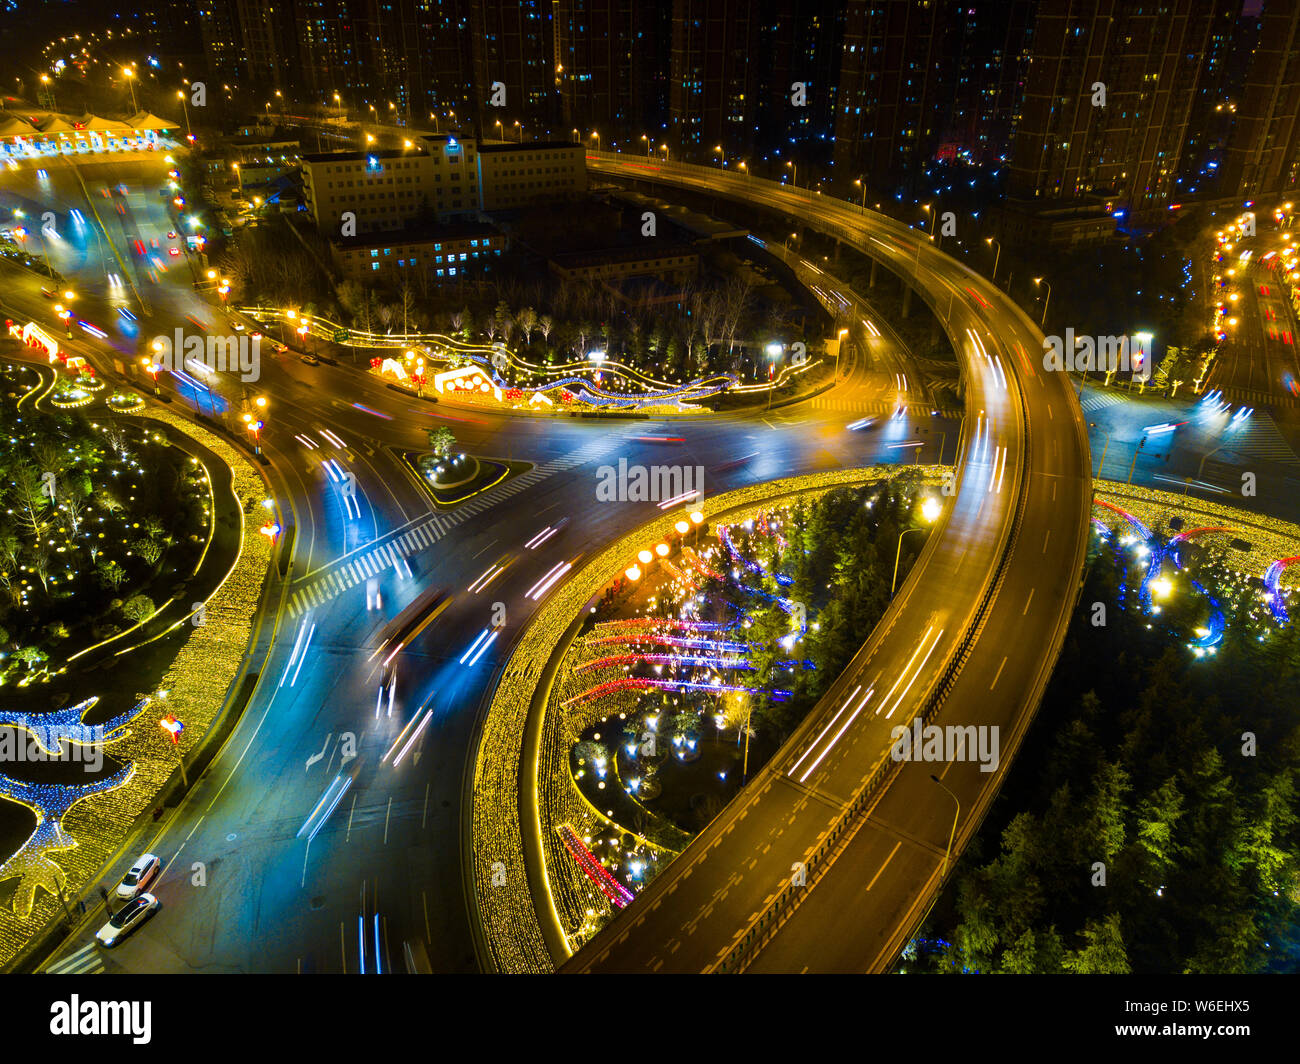 Vue de nuit de l'antenne d'un rond-point et la proximité des routes, ressemblant à l'intérieur d'une horloge mécanique, dans la ville de Xi'an, province du Shaanxi du nord-ouest de la Chine Banque D'Images